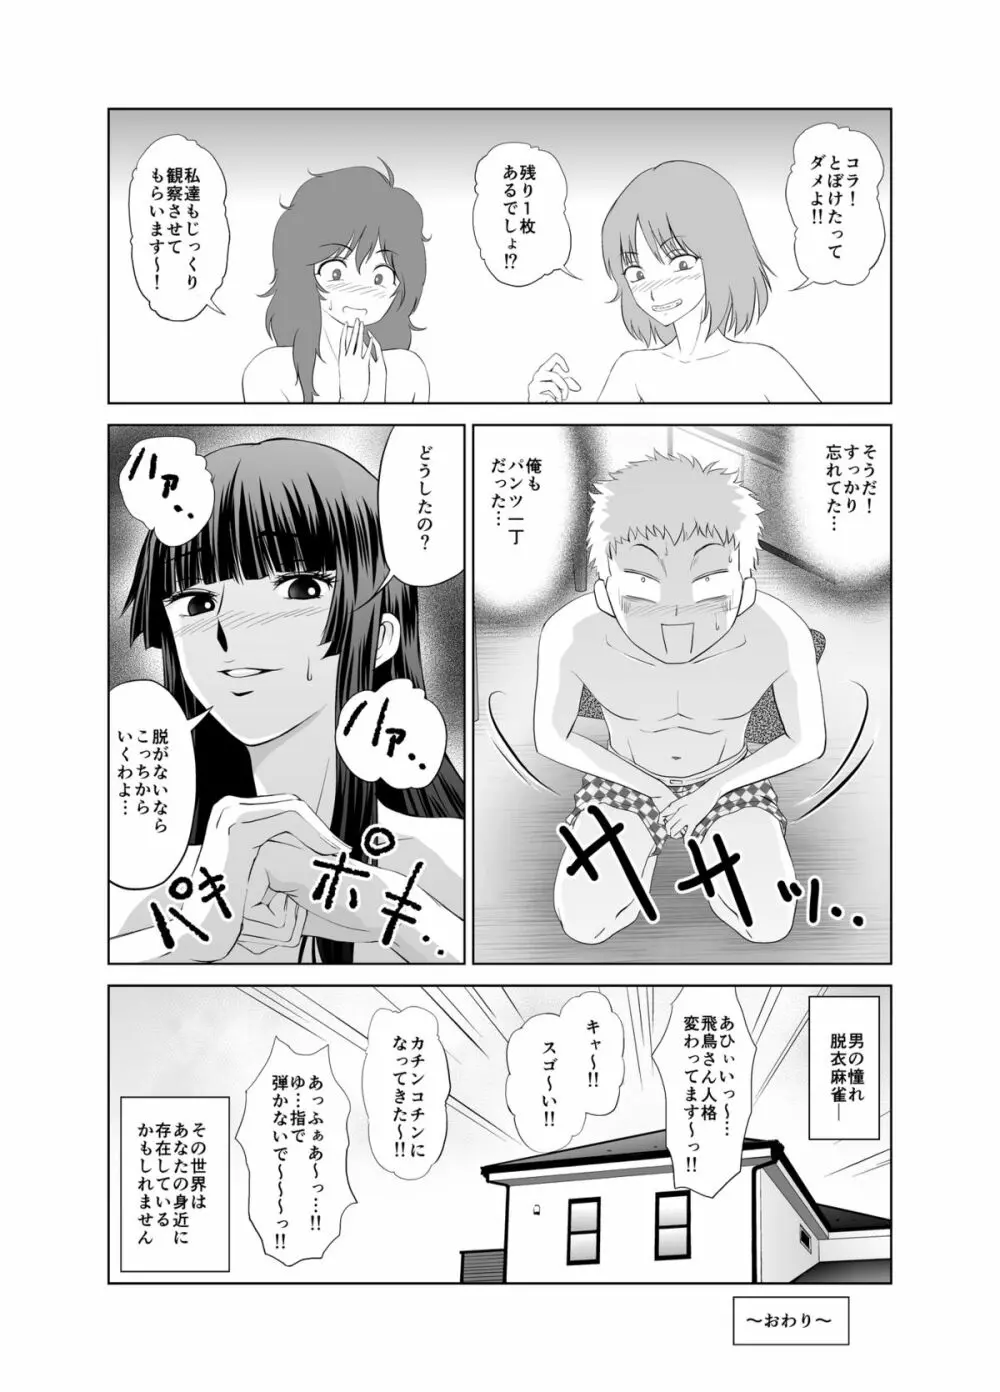 脱衣麻雀～漫画編～【完成版】 Page.32